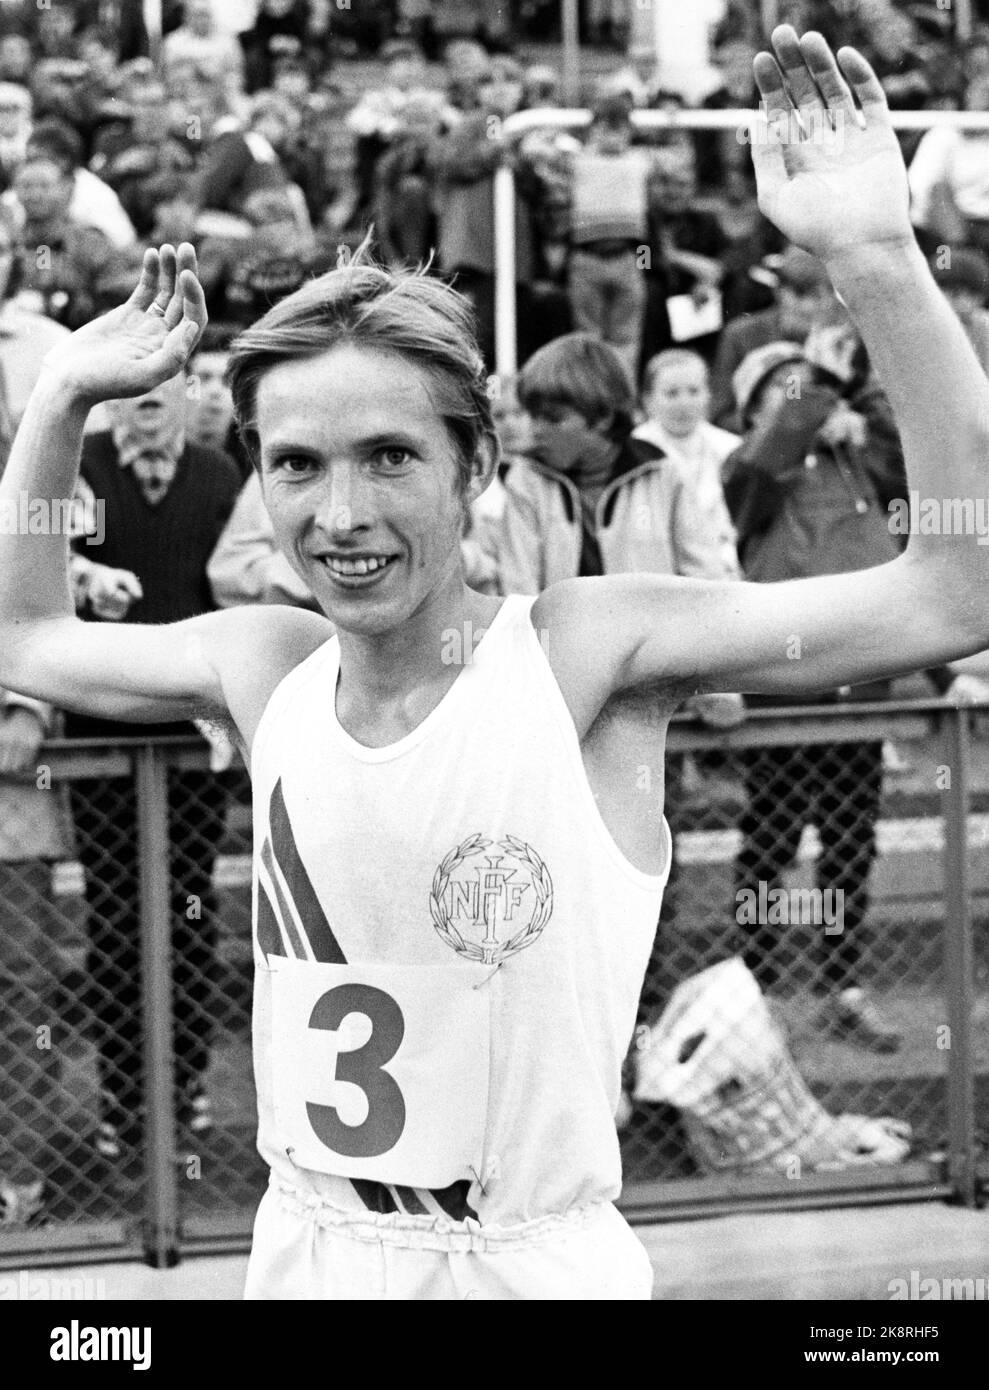 Oslo 19710629.Landskamp Norge / Schweden in der Leichtathletik. Per Halle erzielte den Sieger von 10000 Metern, was ein neuer norwegischer Rekord war. Foto: NTB-Archiv / NTB Stockfoto